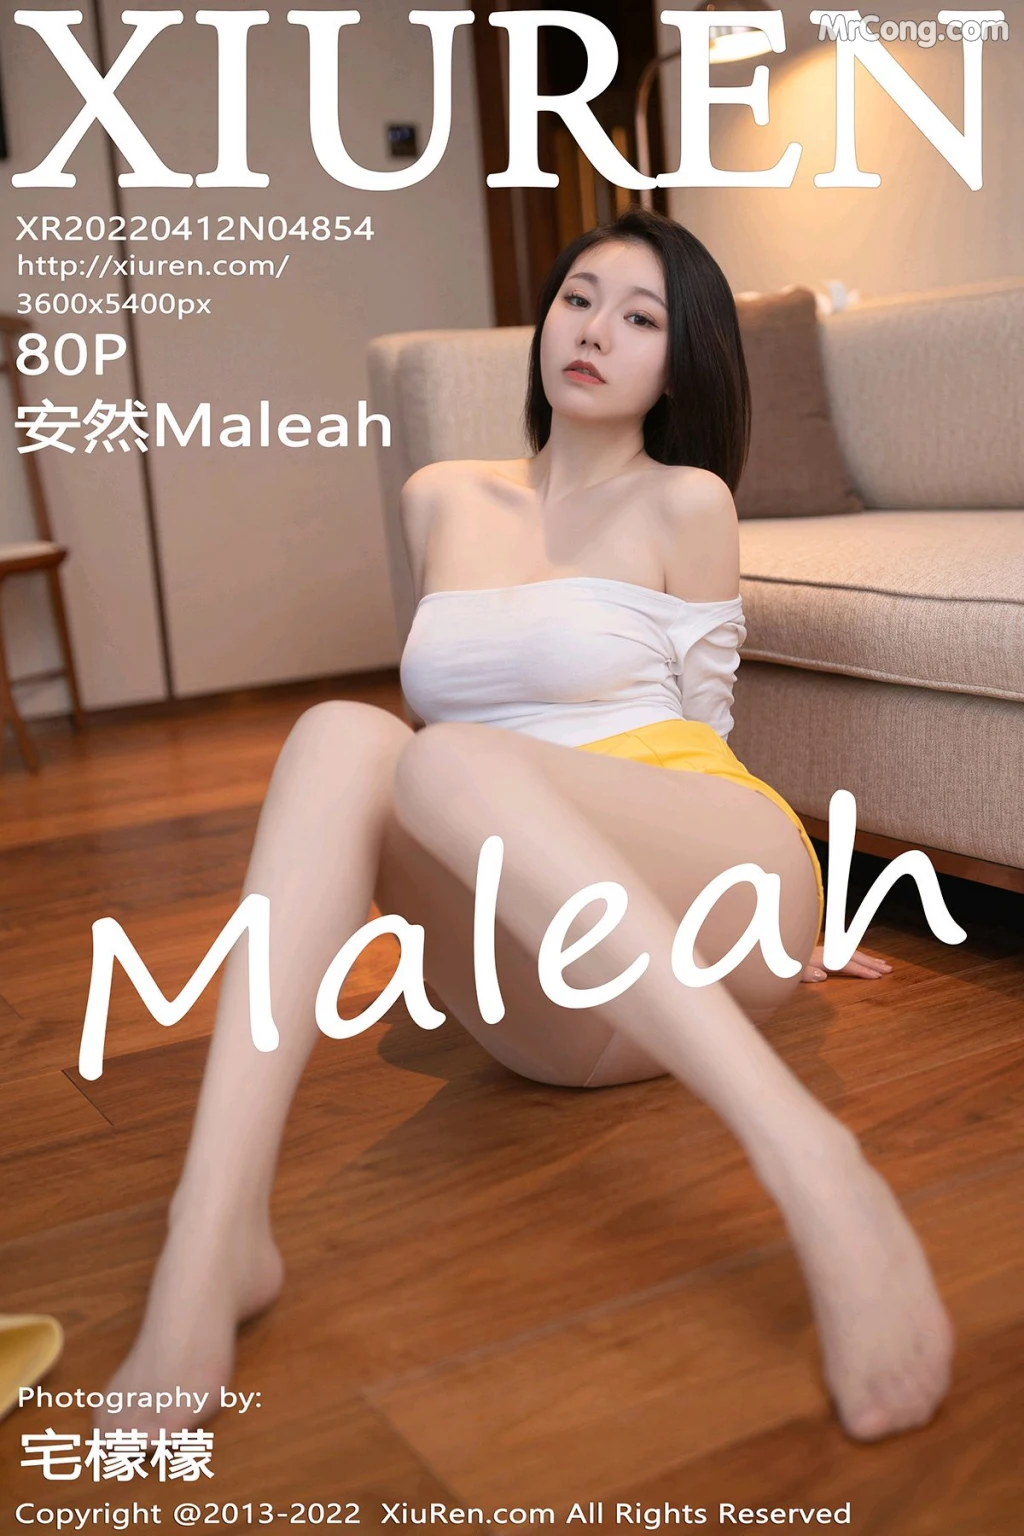 XIUREN No.4854: 安然Maleah (81 photos) photo 5-0